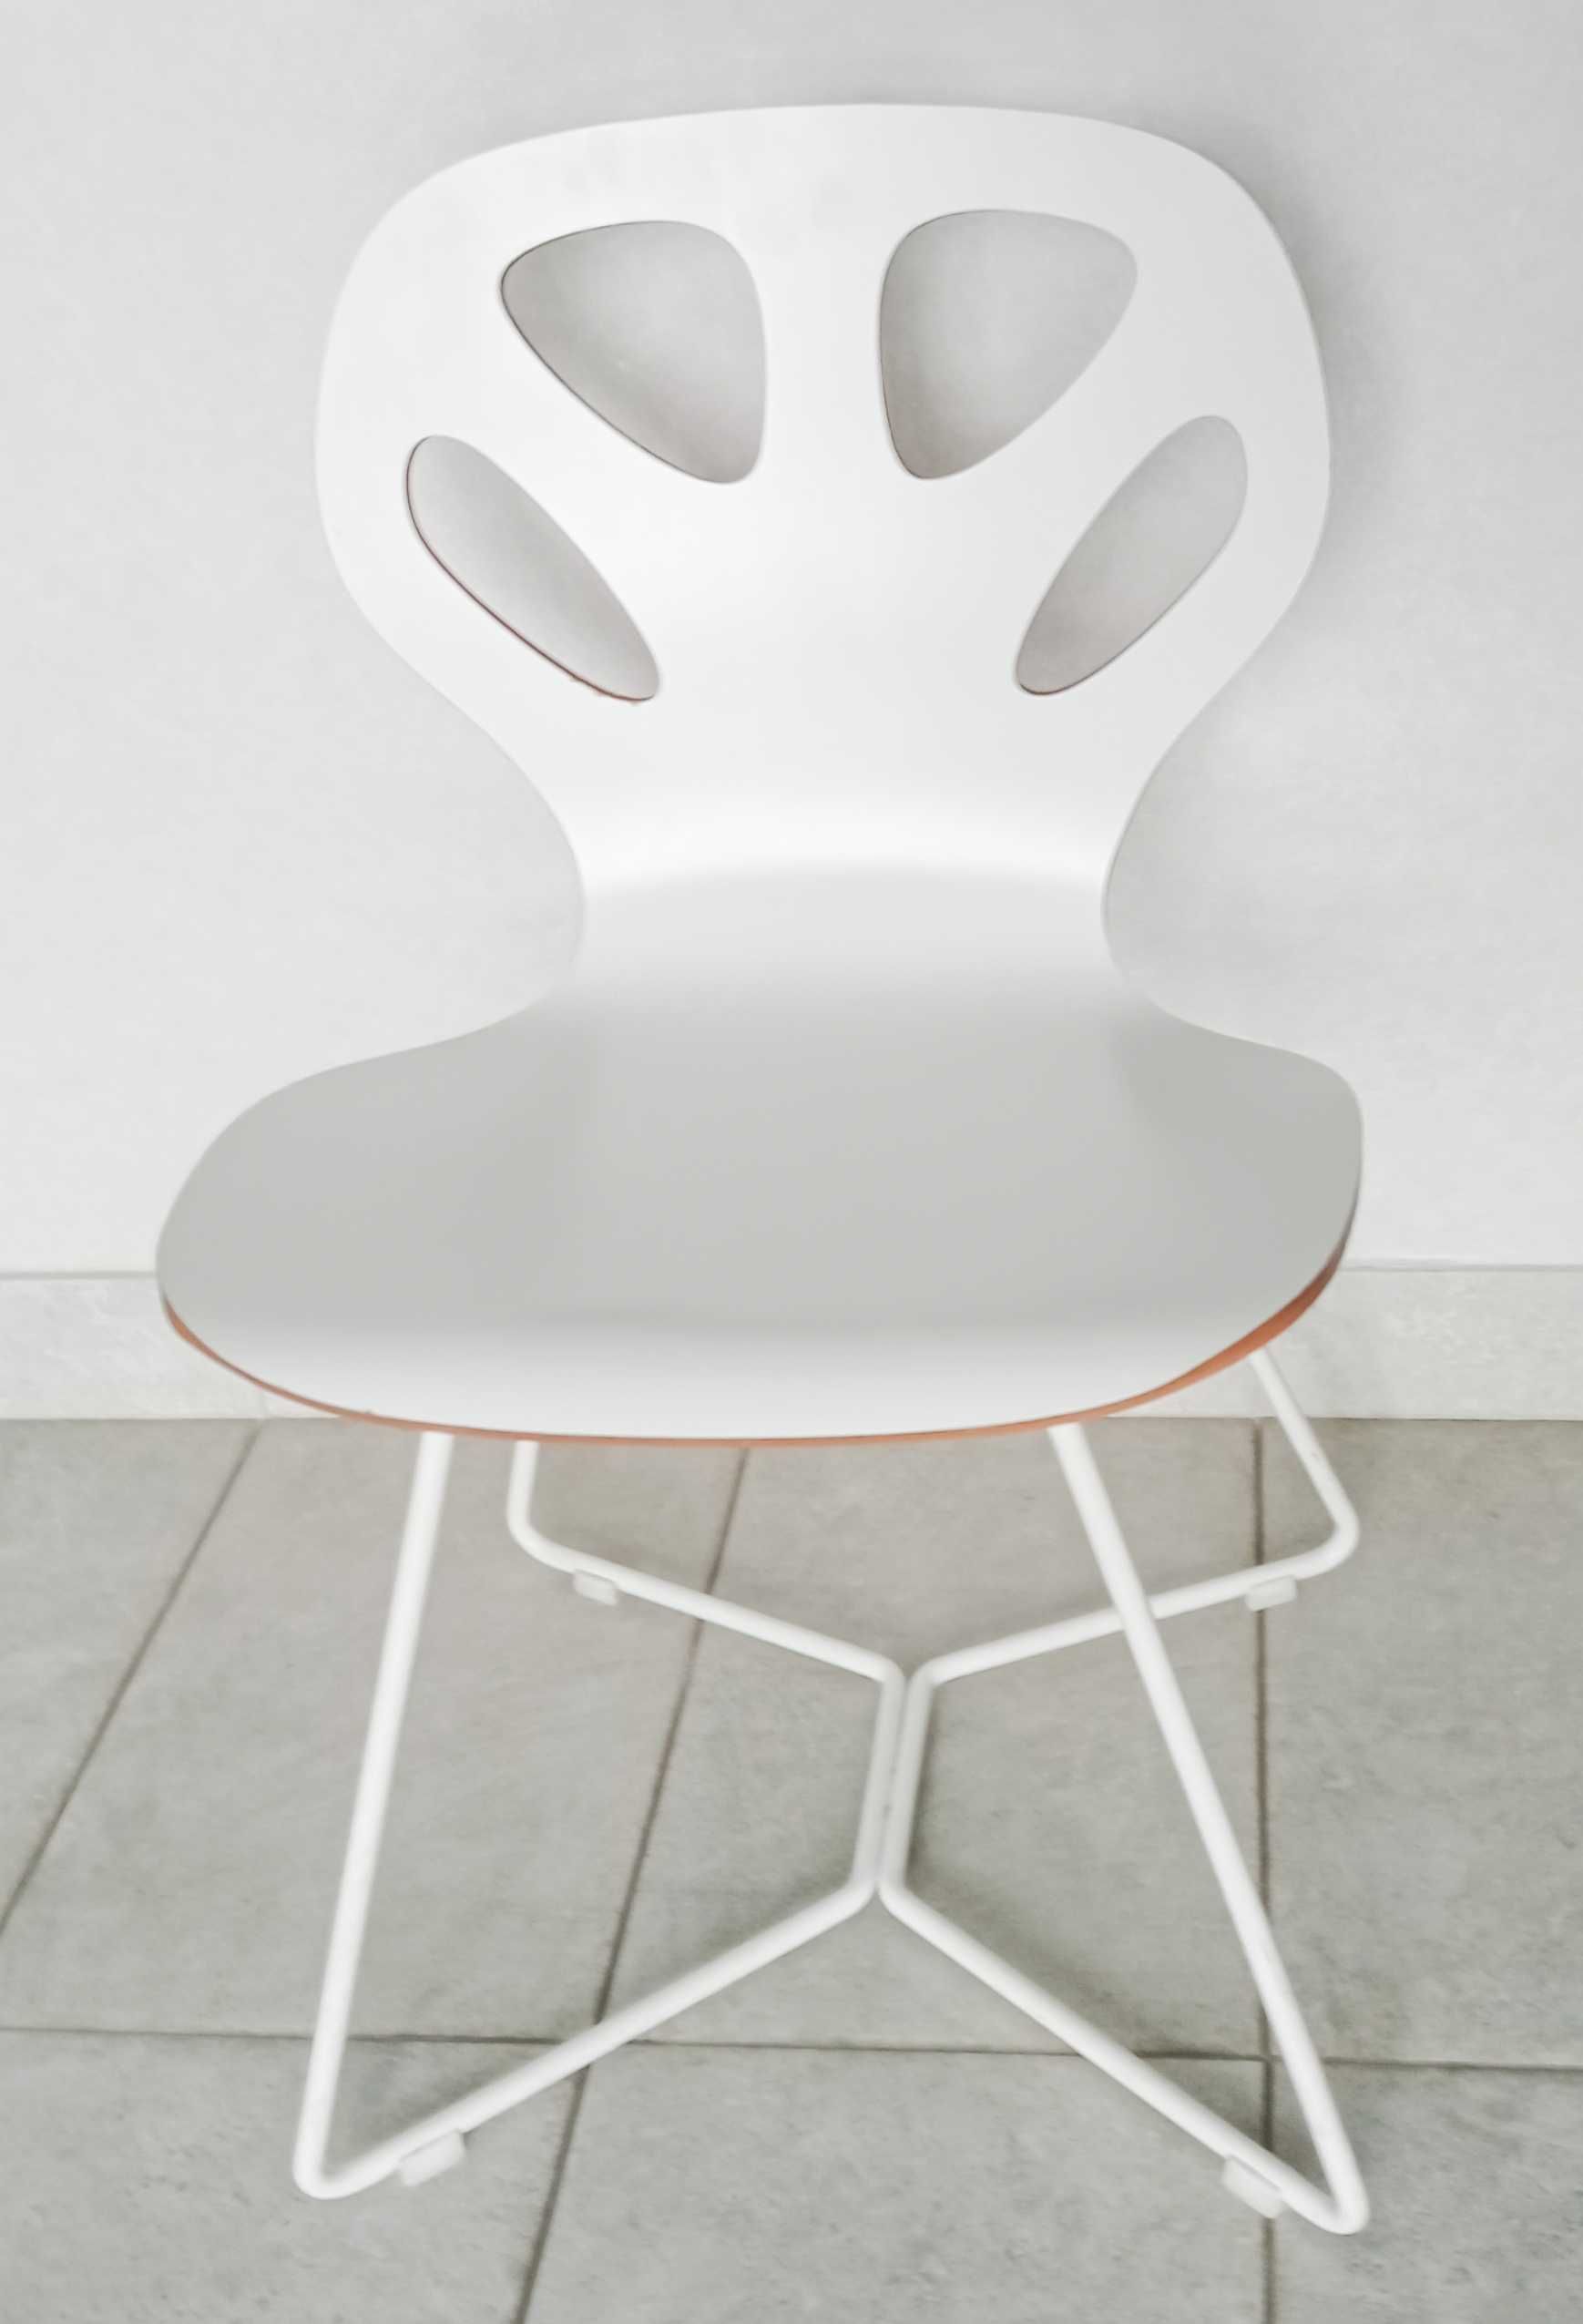 Krzesło Maple M02 IKER białe